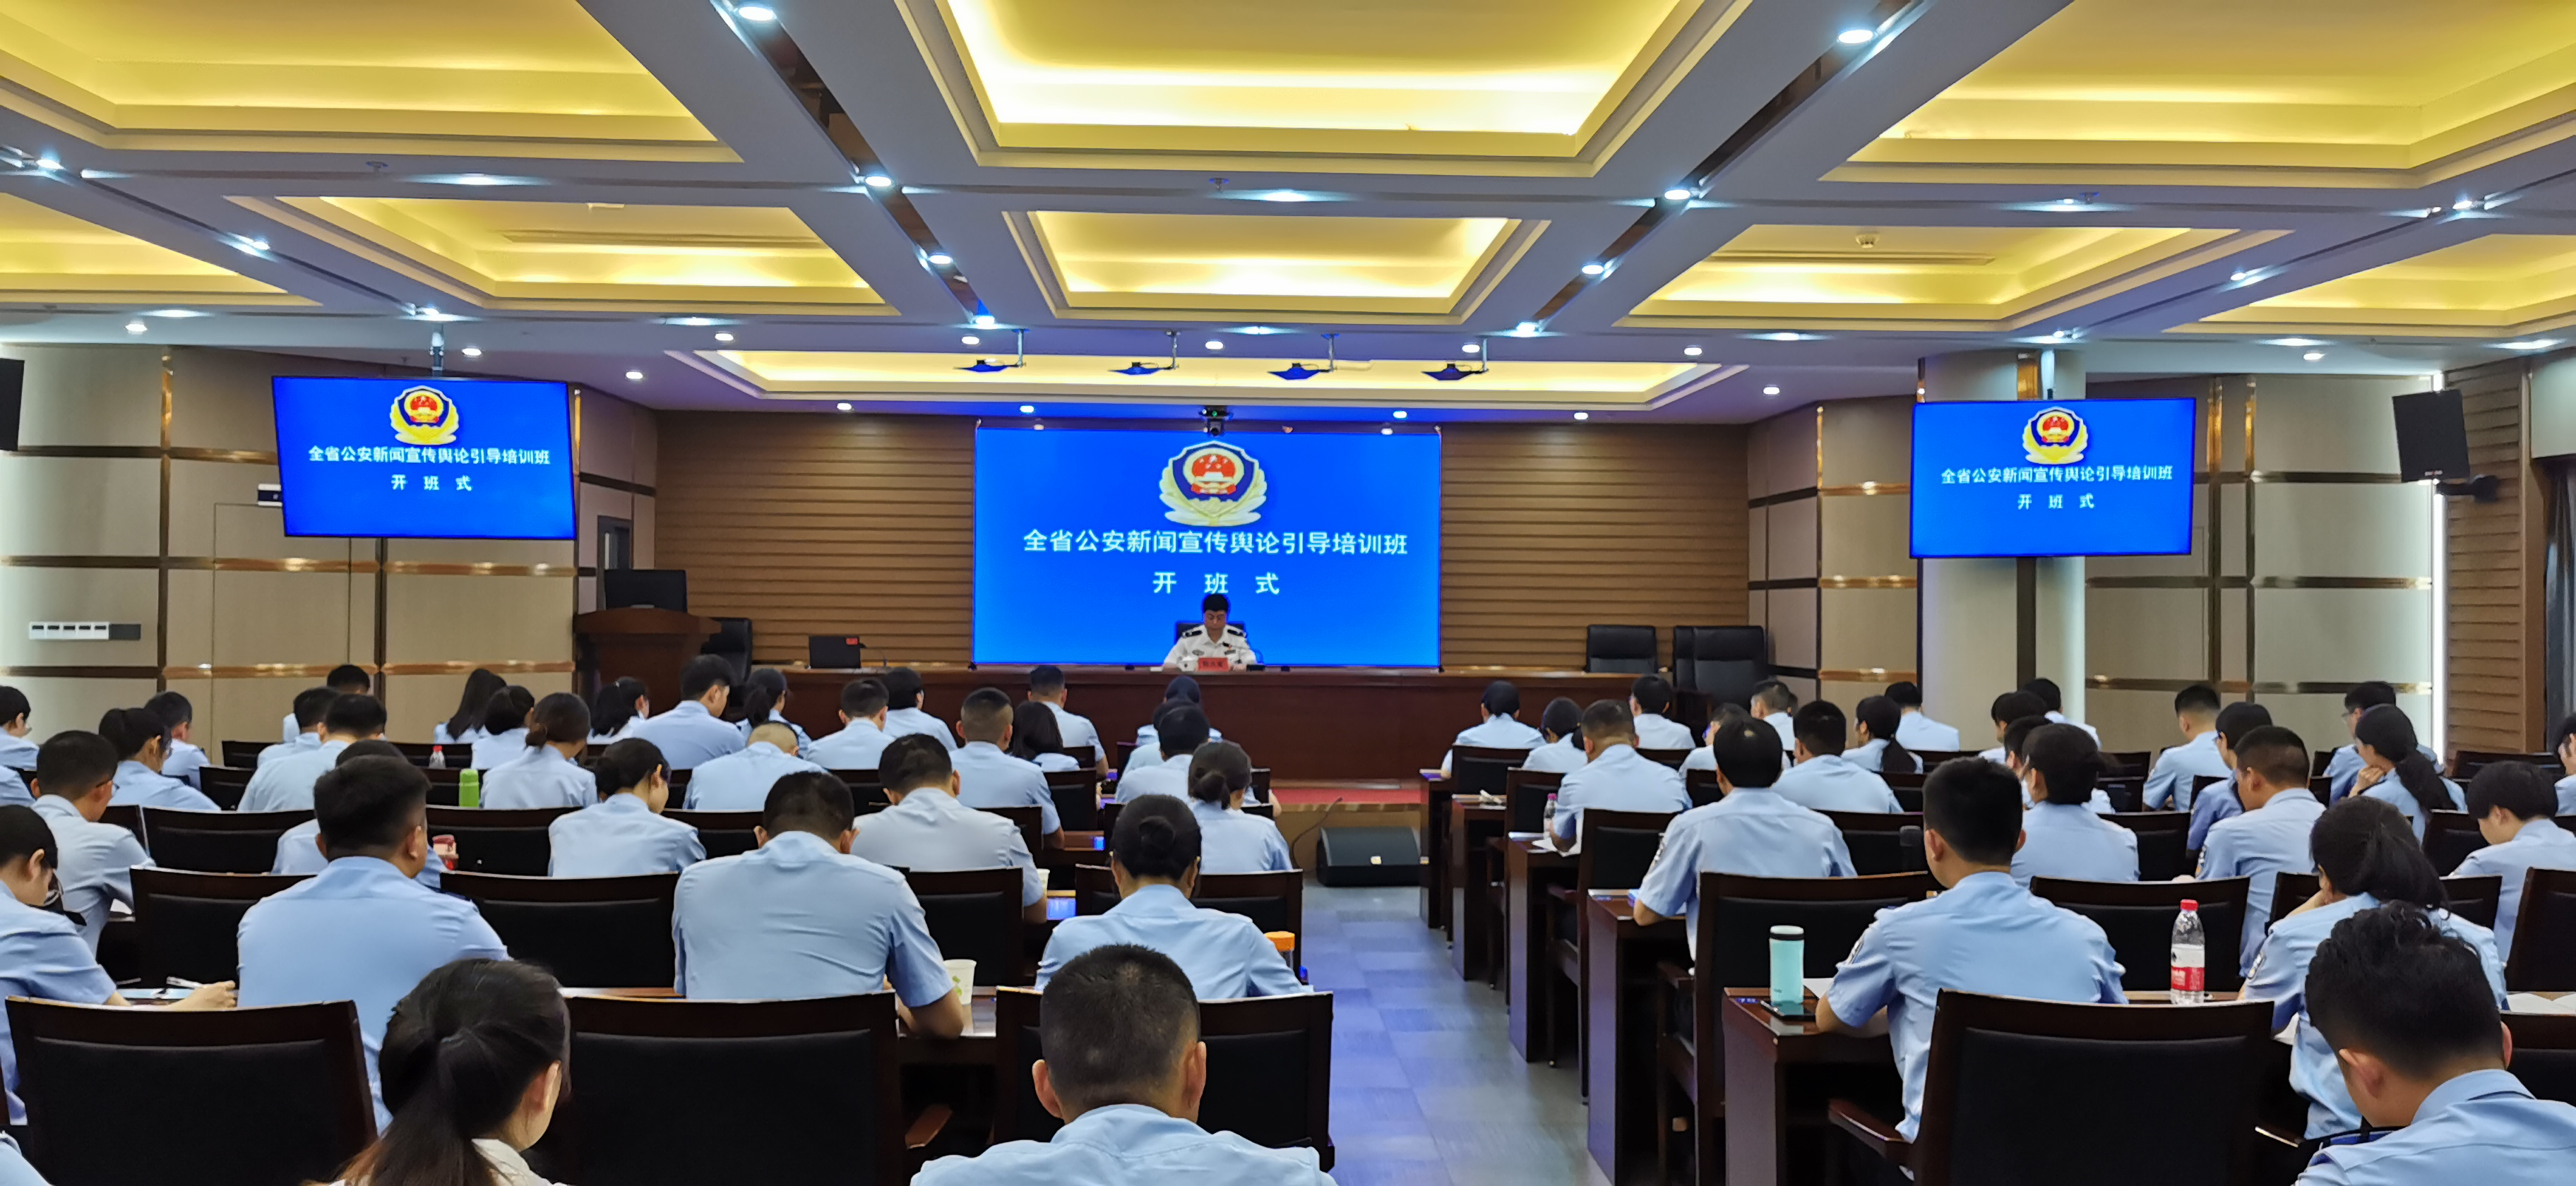 福建警察学院举办全省公安新闻宣传舆论引导培训班